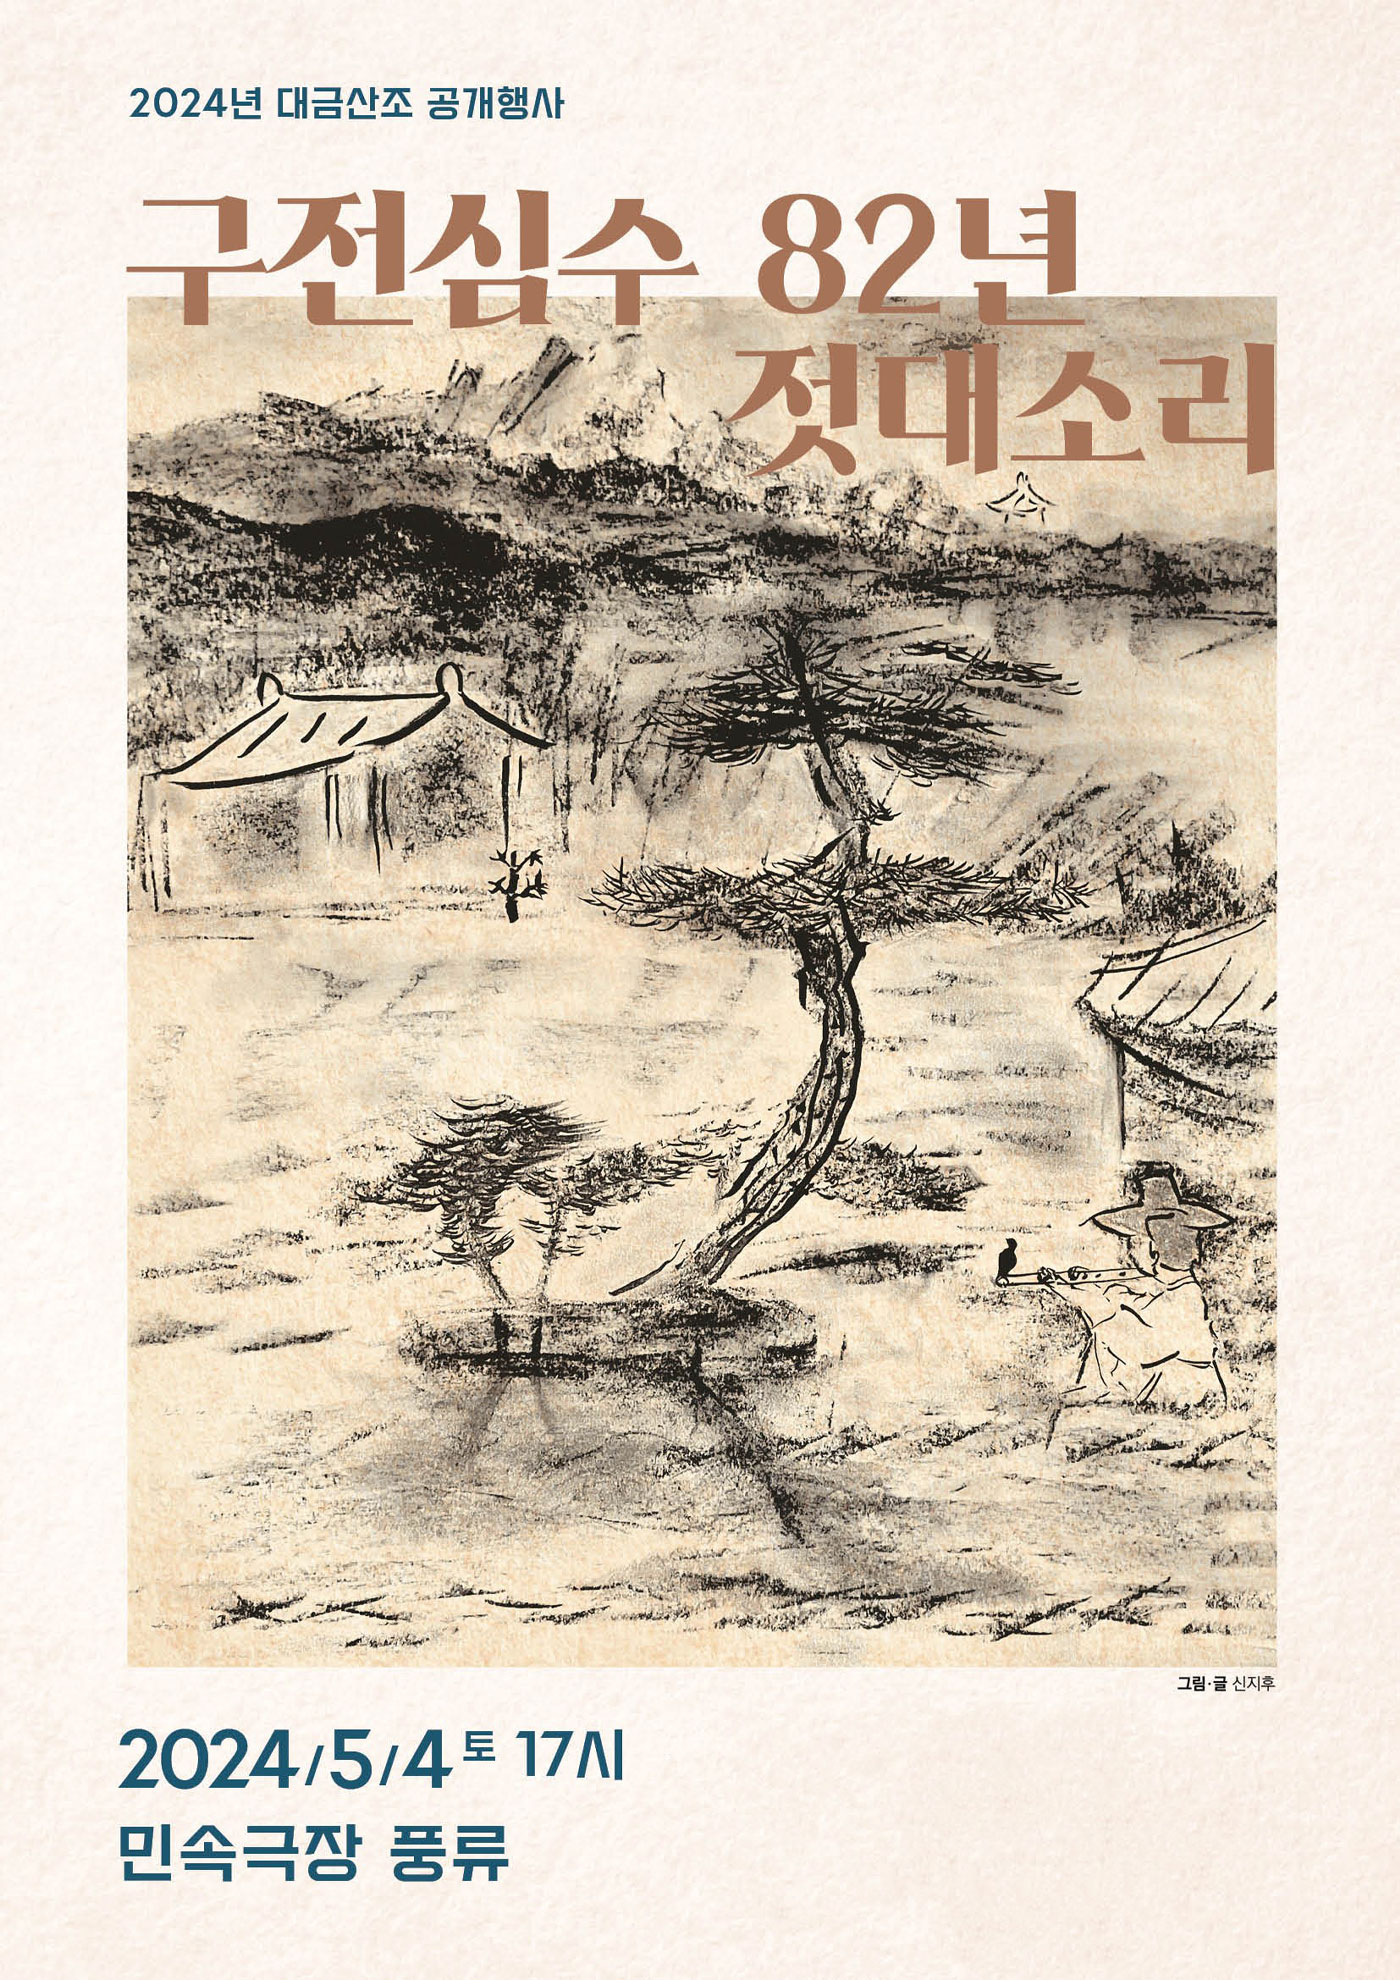 구전심수 젓대소리 포스터